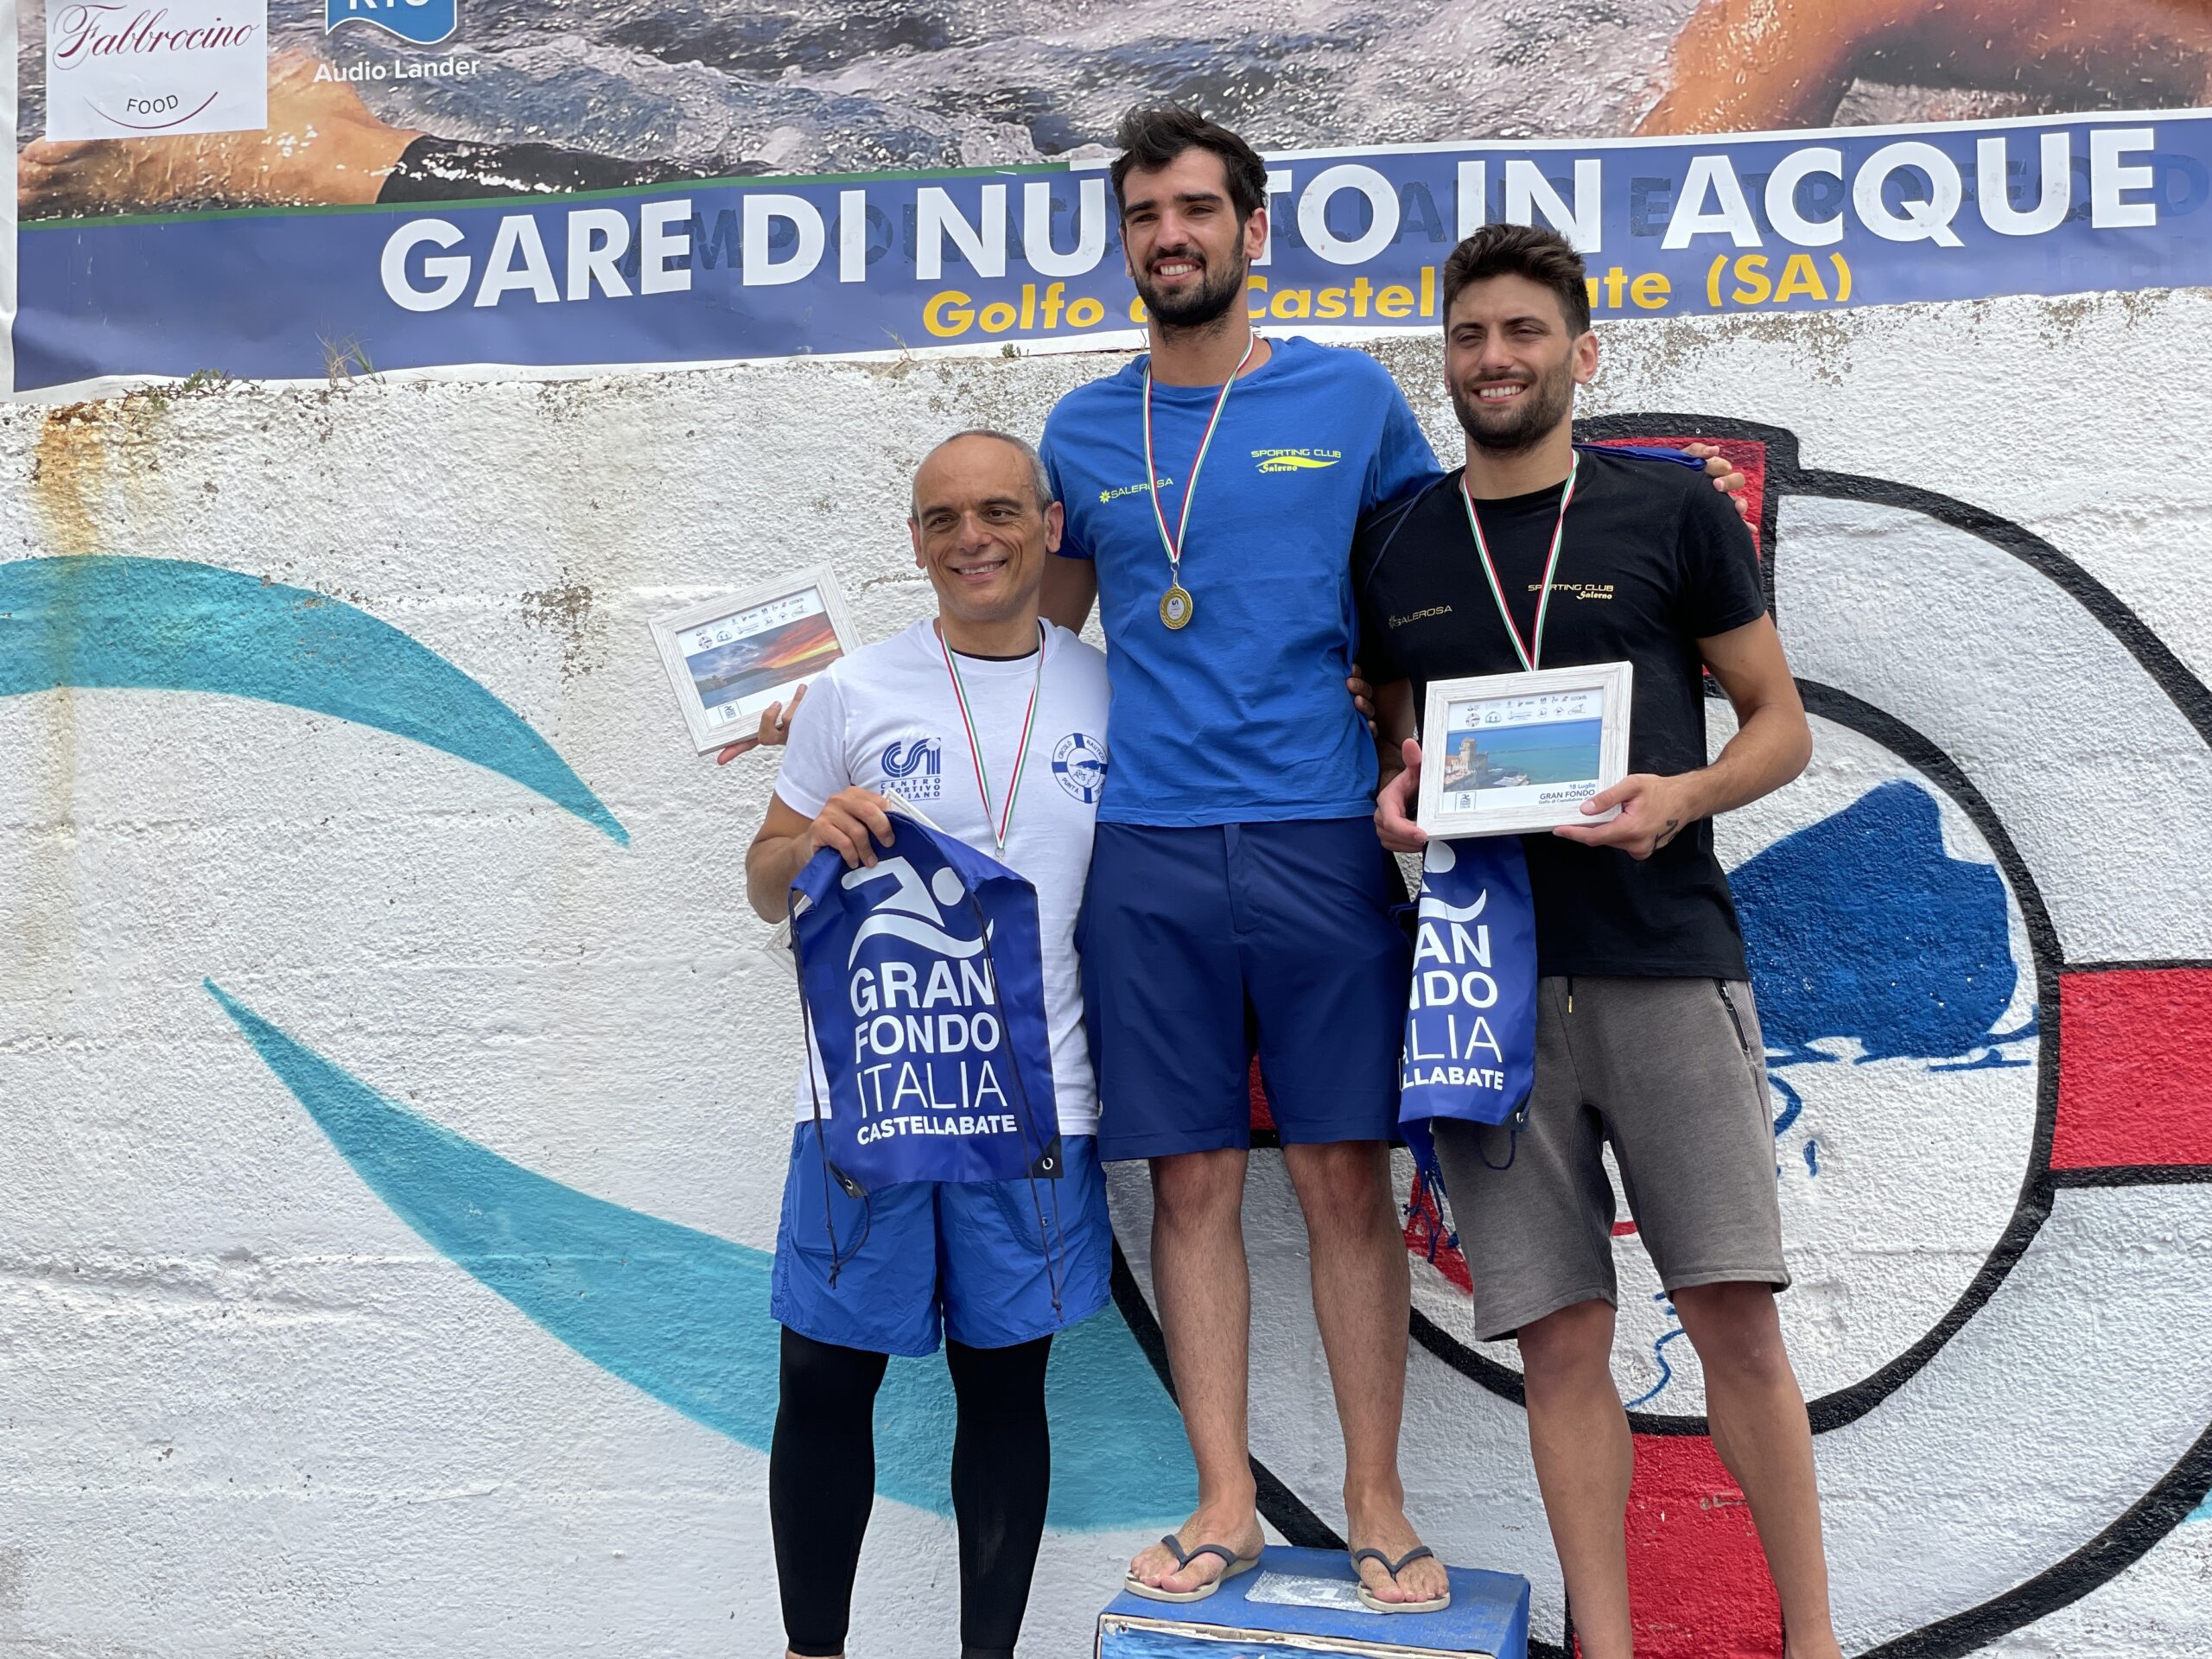 Pallanuoto, Alfredo Sacco vince la 15 km nel golfo di Castellabate